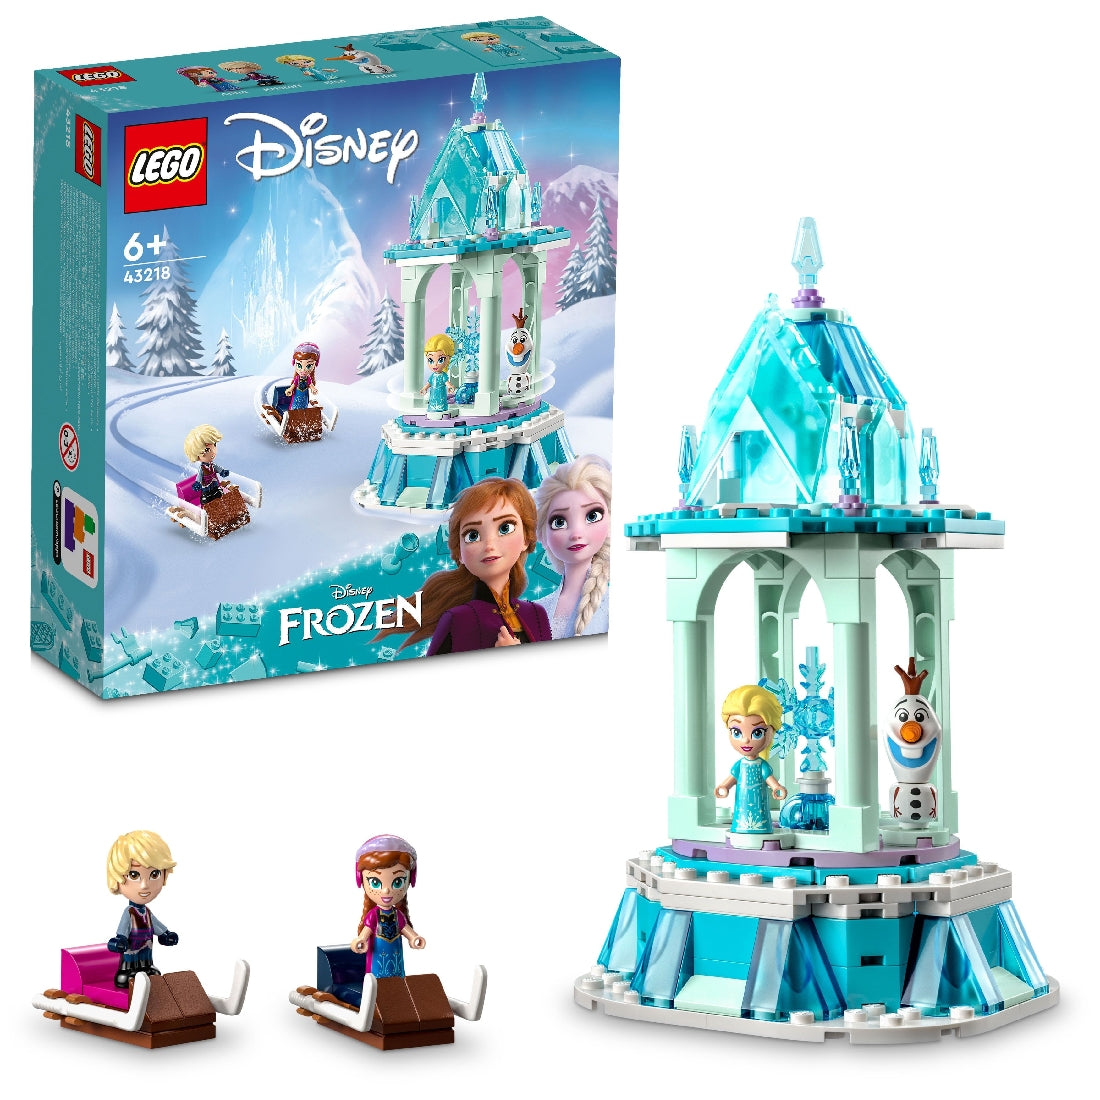 LEGO DISNEY PRINCESS ANNA AND ELSA 'S MAGIC CAROUSEL 43218 AGE: 6+